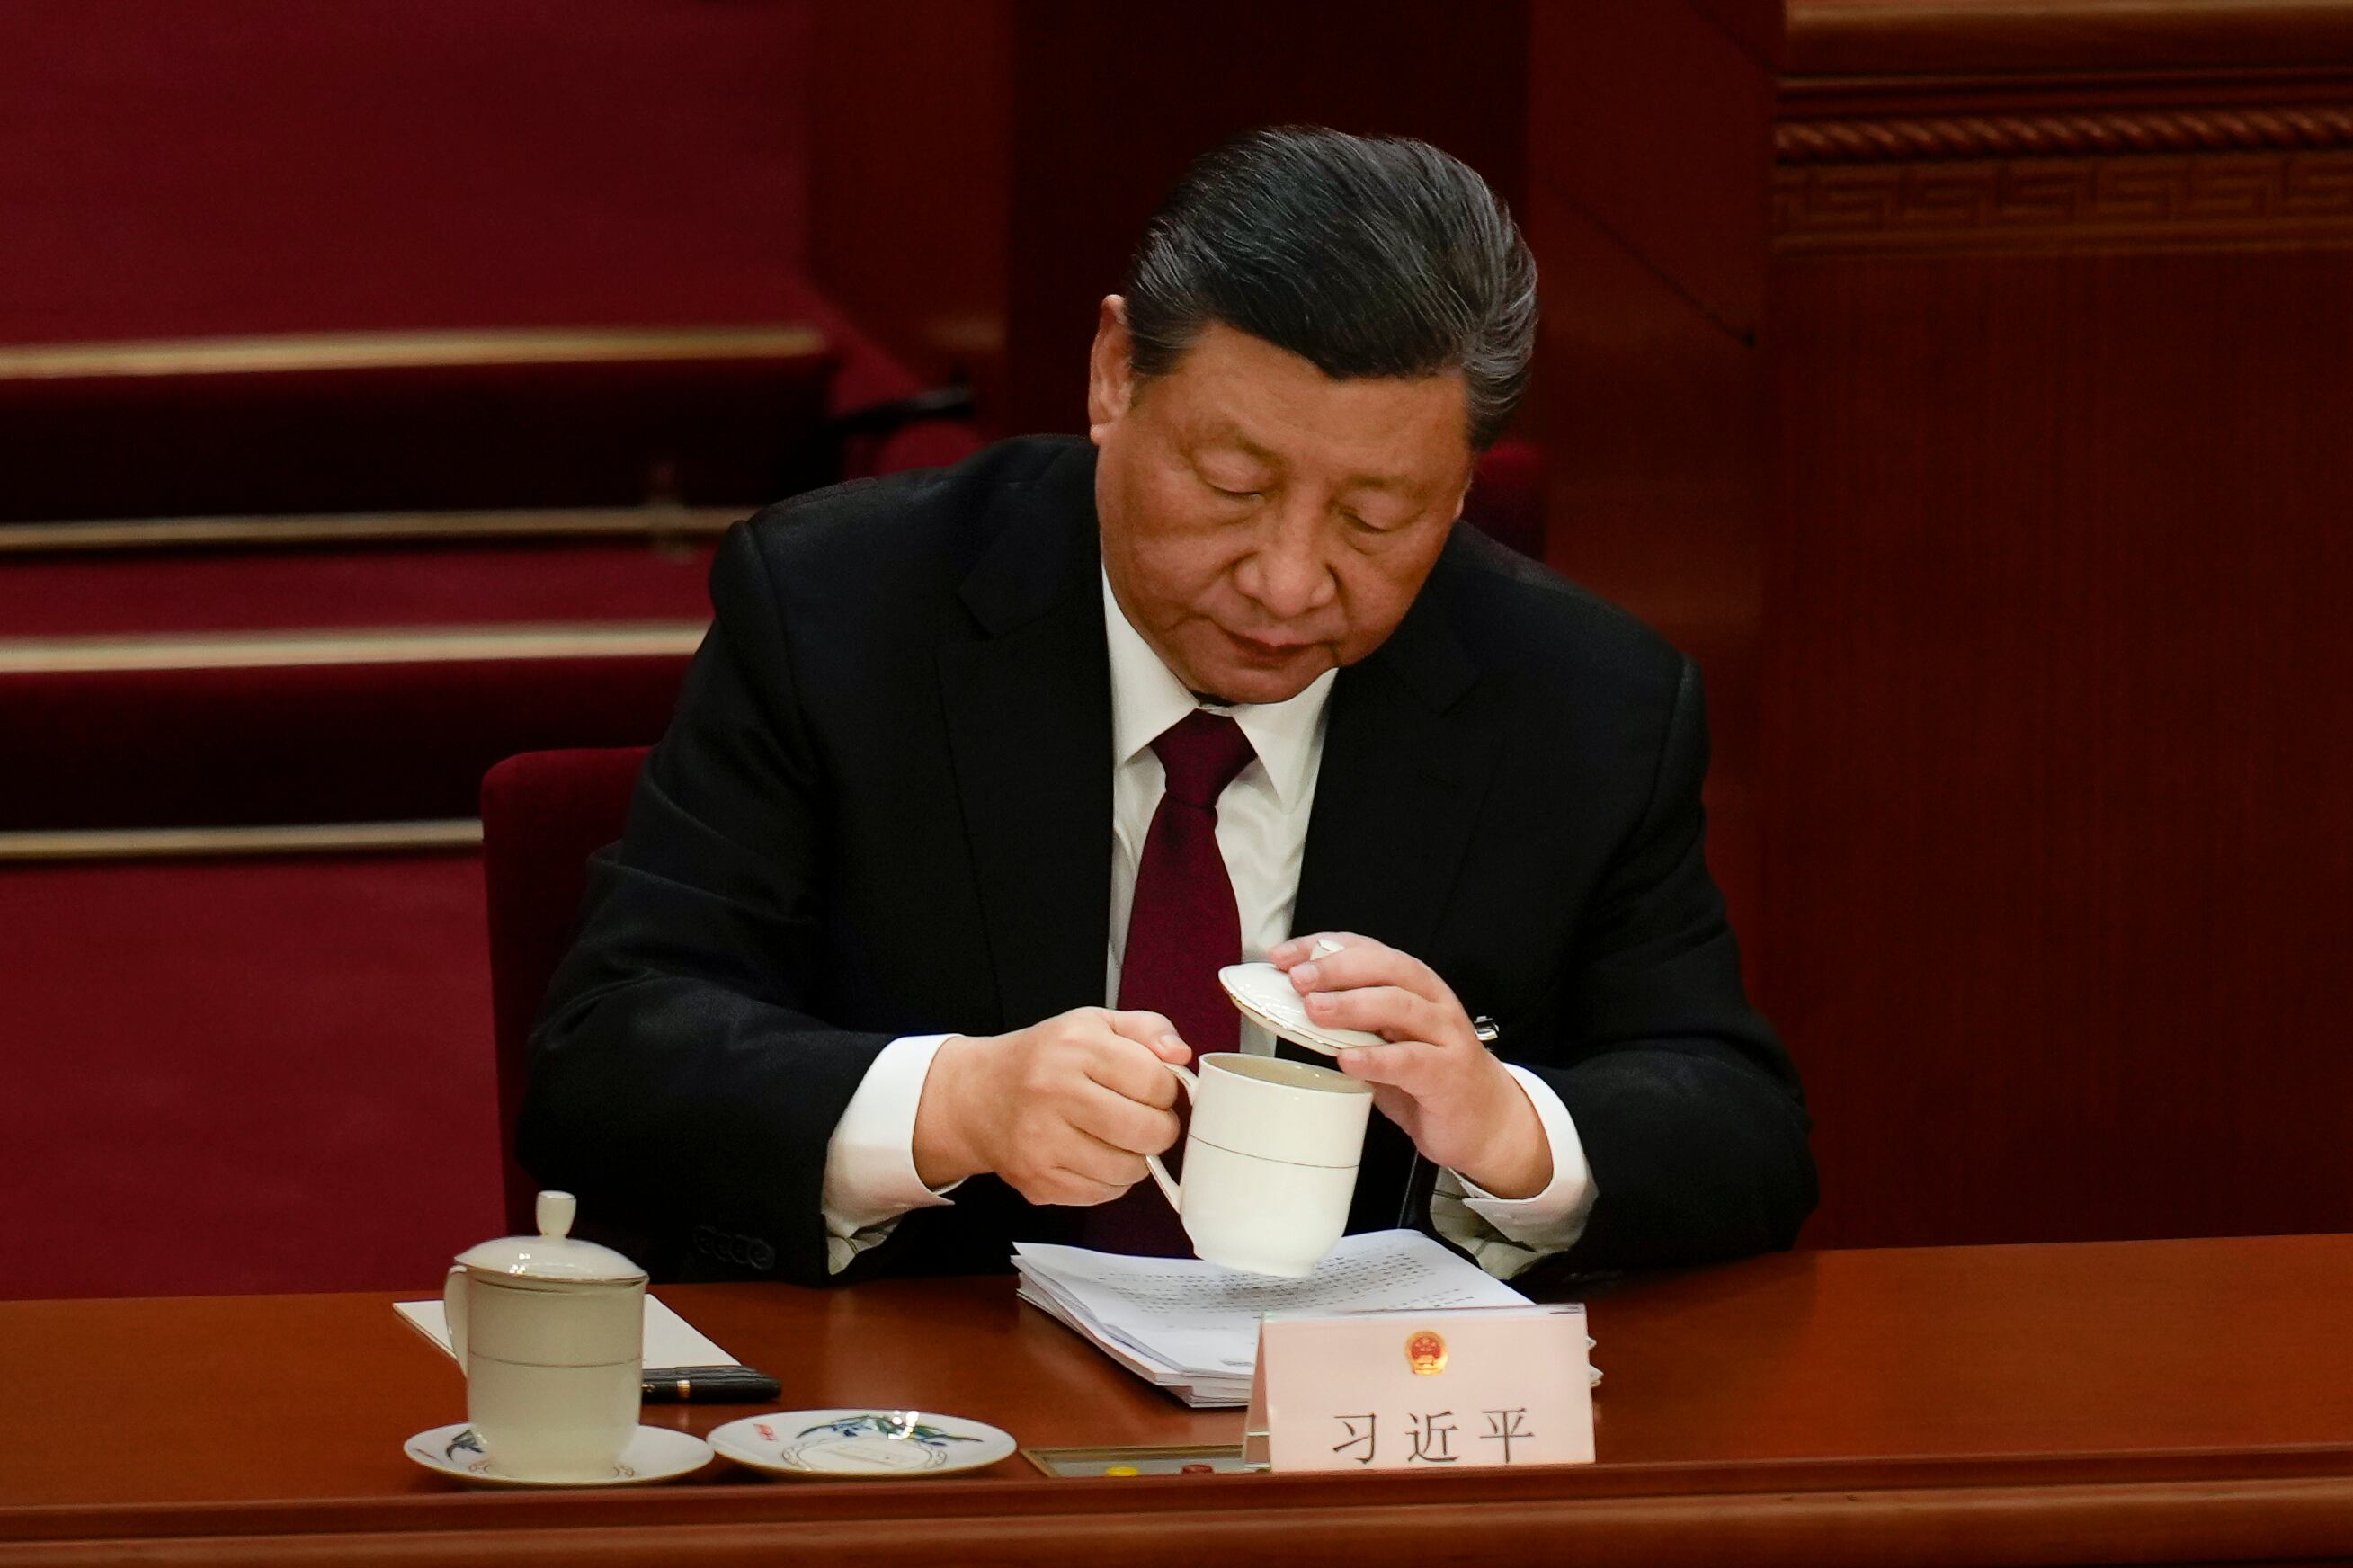 El presidente chino, Xi Jinping, bebe una taza de té durante la sesión inaugural del Congreso Nacional del Pueblo en el Gran Salón del Pueblo en Pekín, China, este martes.